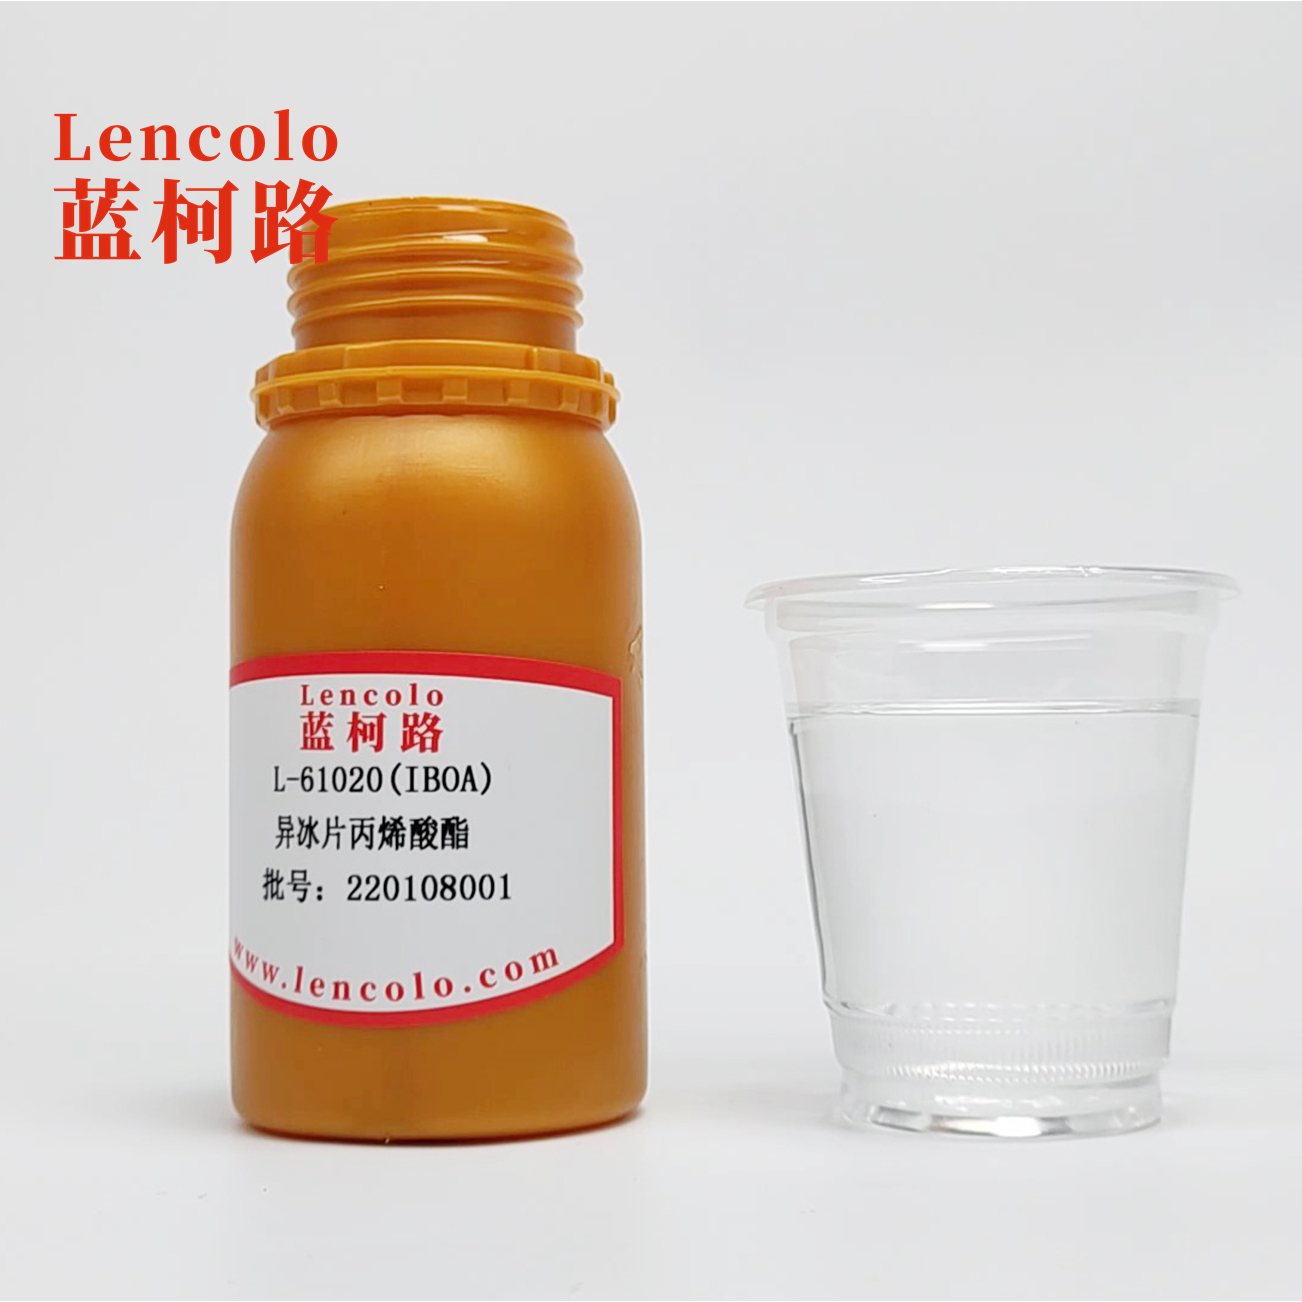 L-61020(IBOA) Isobornyl Acrylate